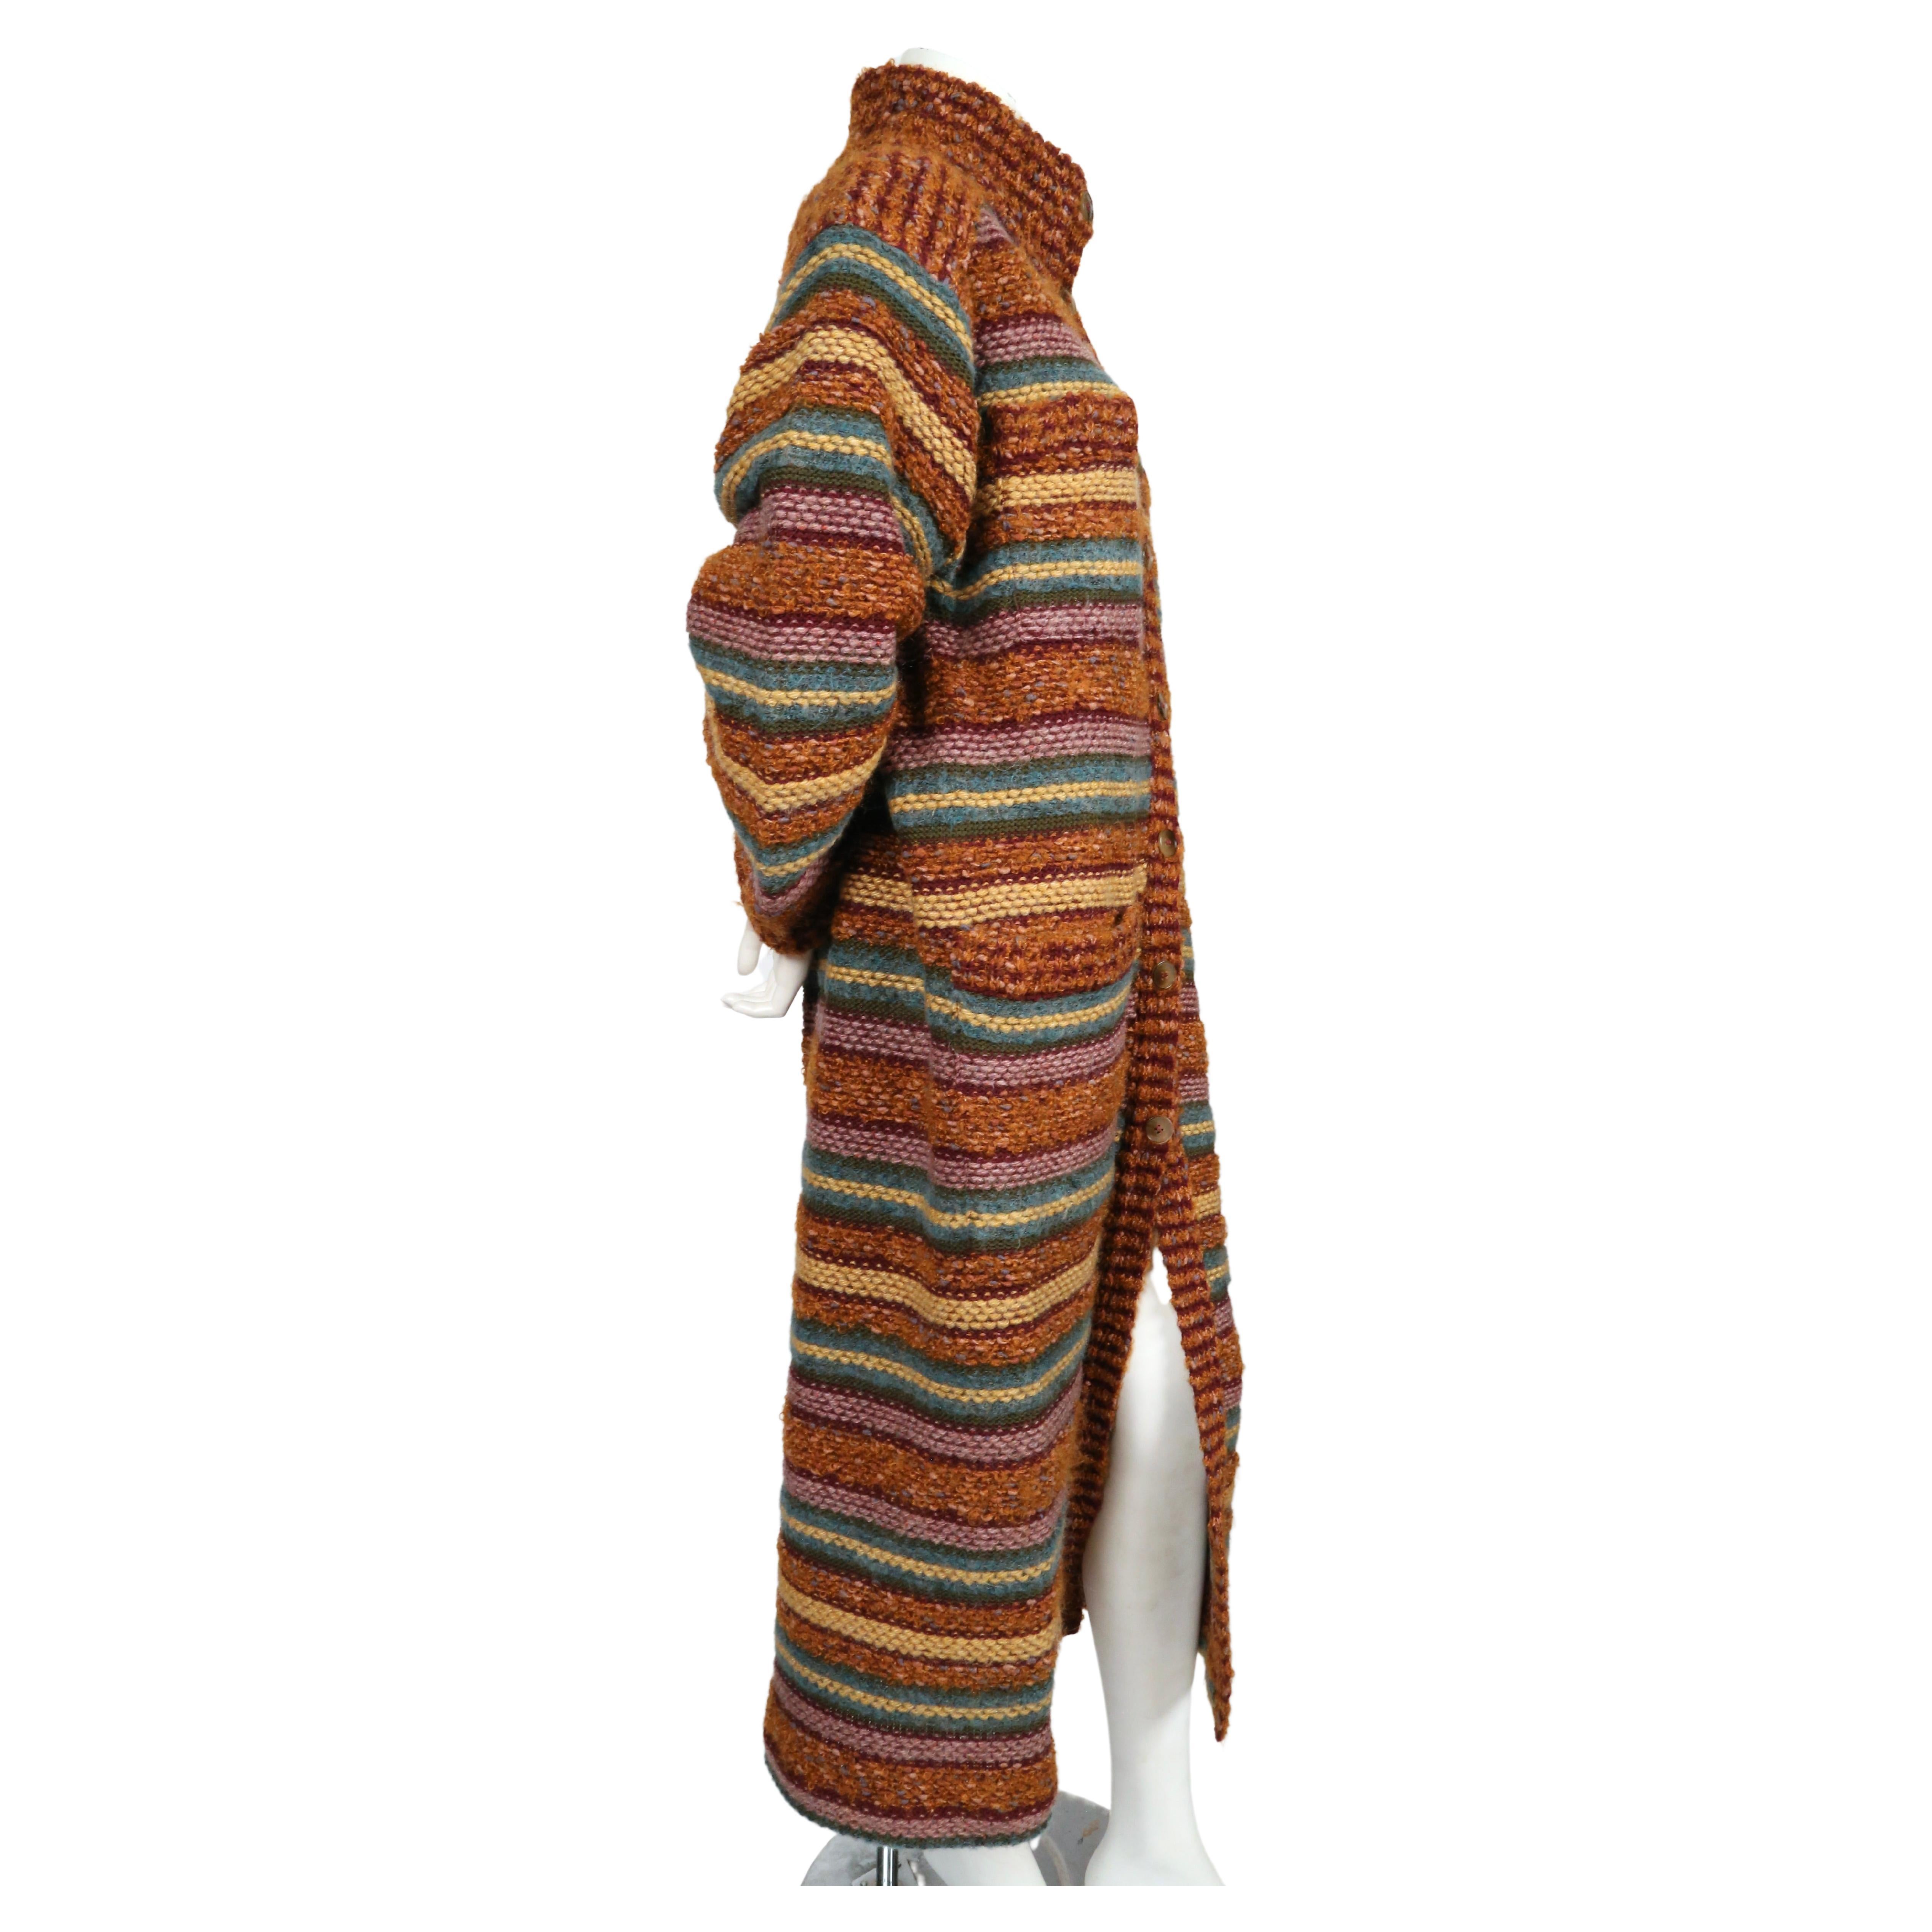 Langer gestreifter Pullovermantel von Missoni aus den 1970er Jahren. Etikettiert eine Größe M. Ungefähre Maße: Schulter 20